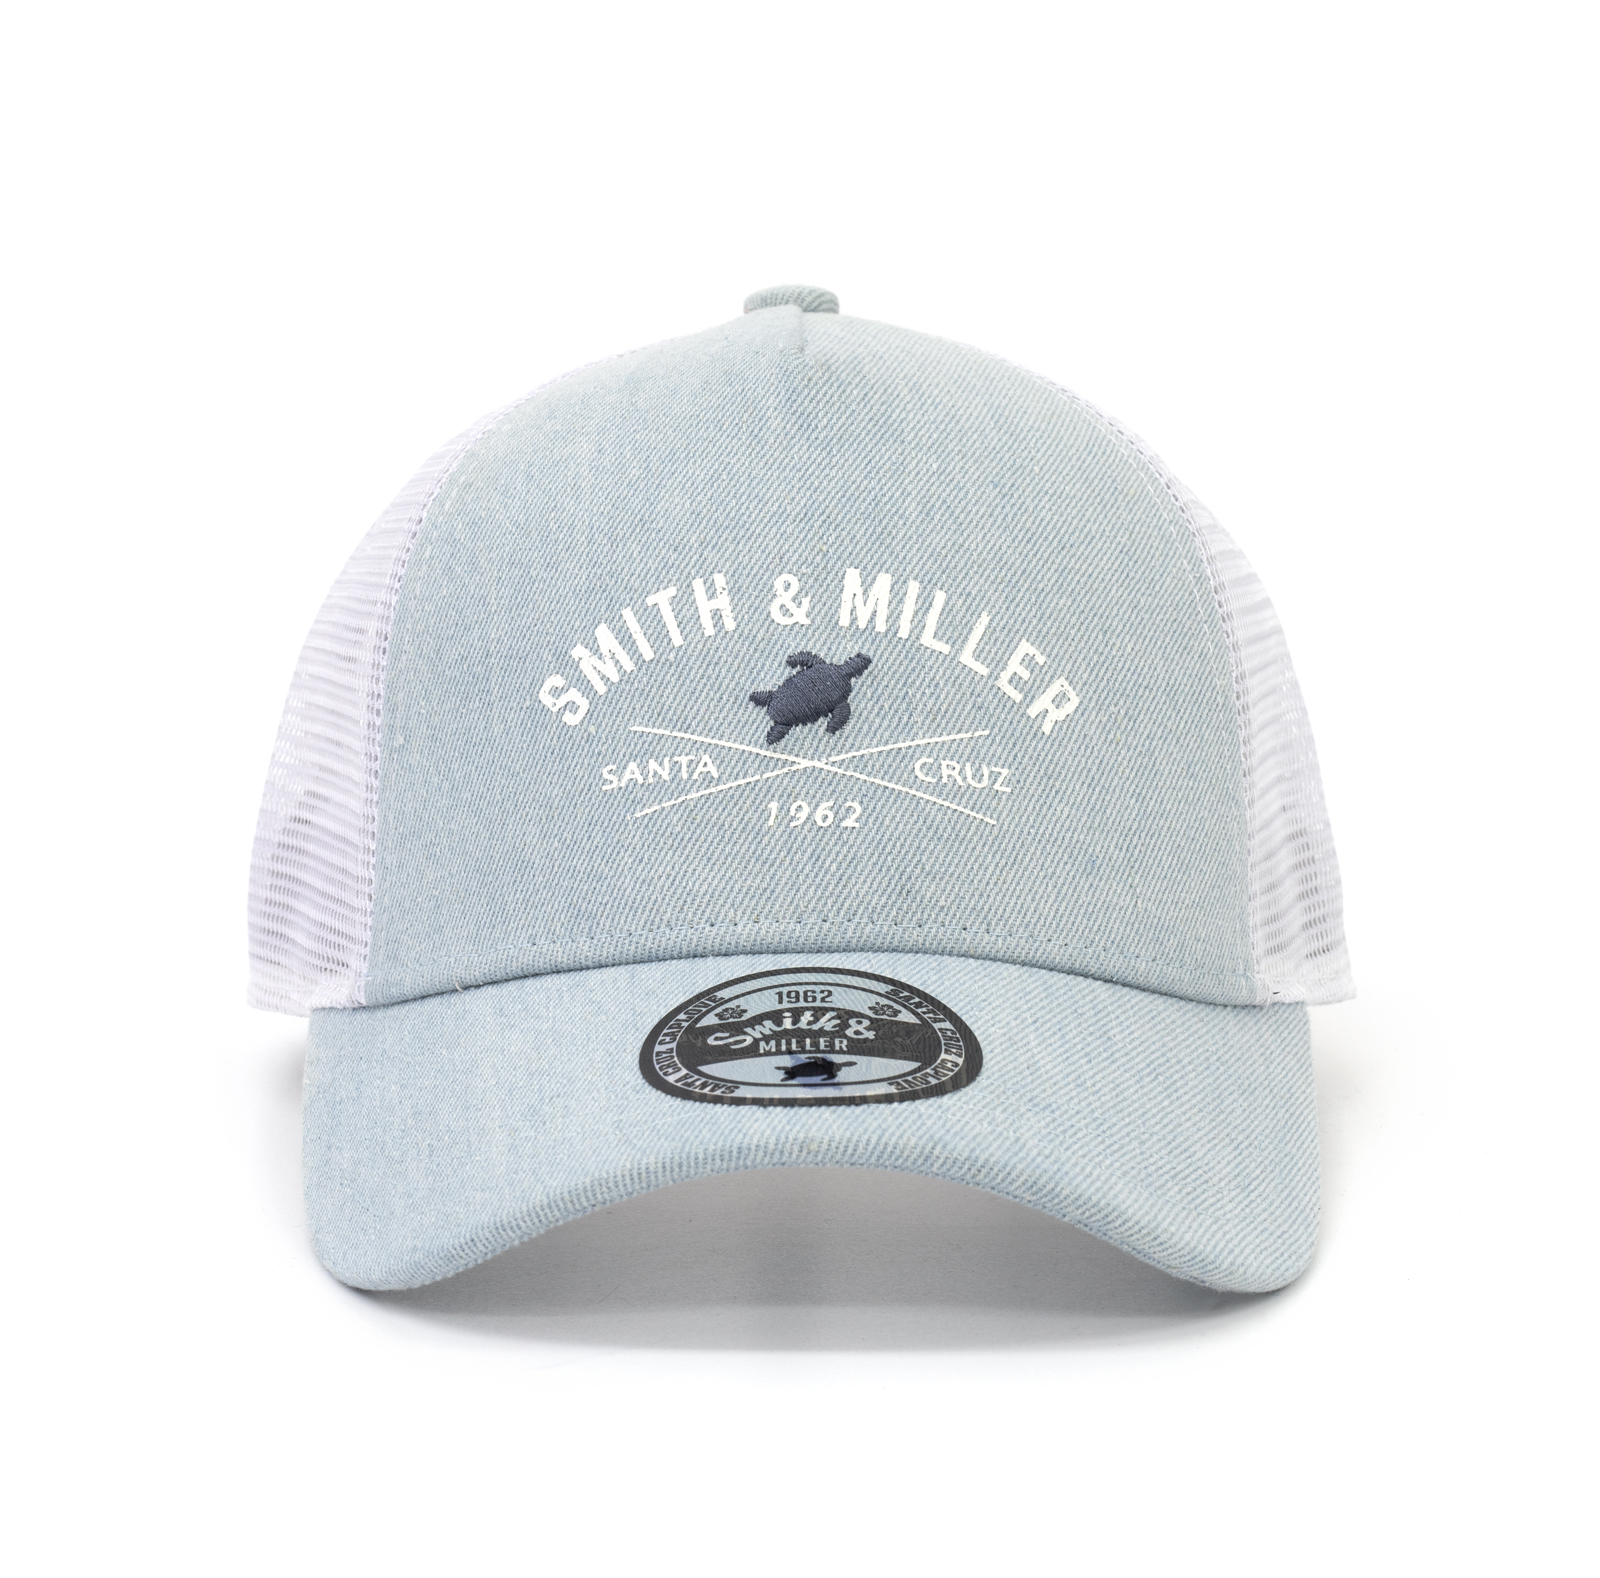 Smith & Miller Dawes Trucker Cap, light denim - white